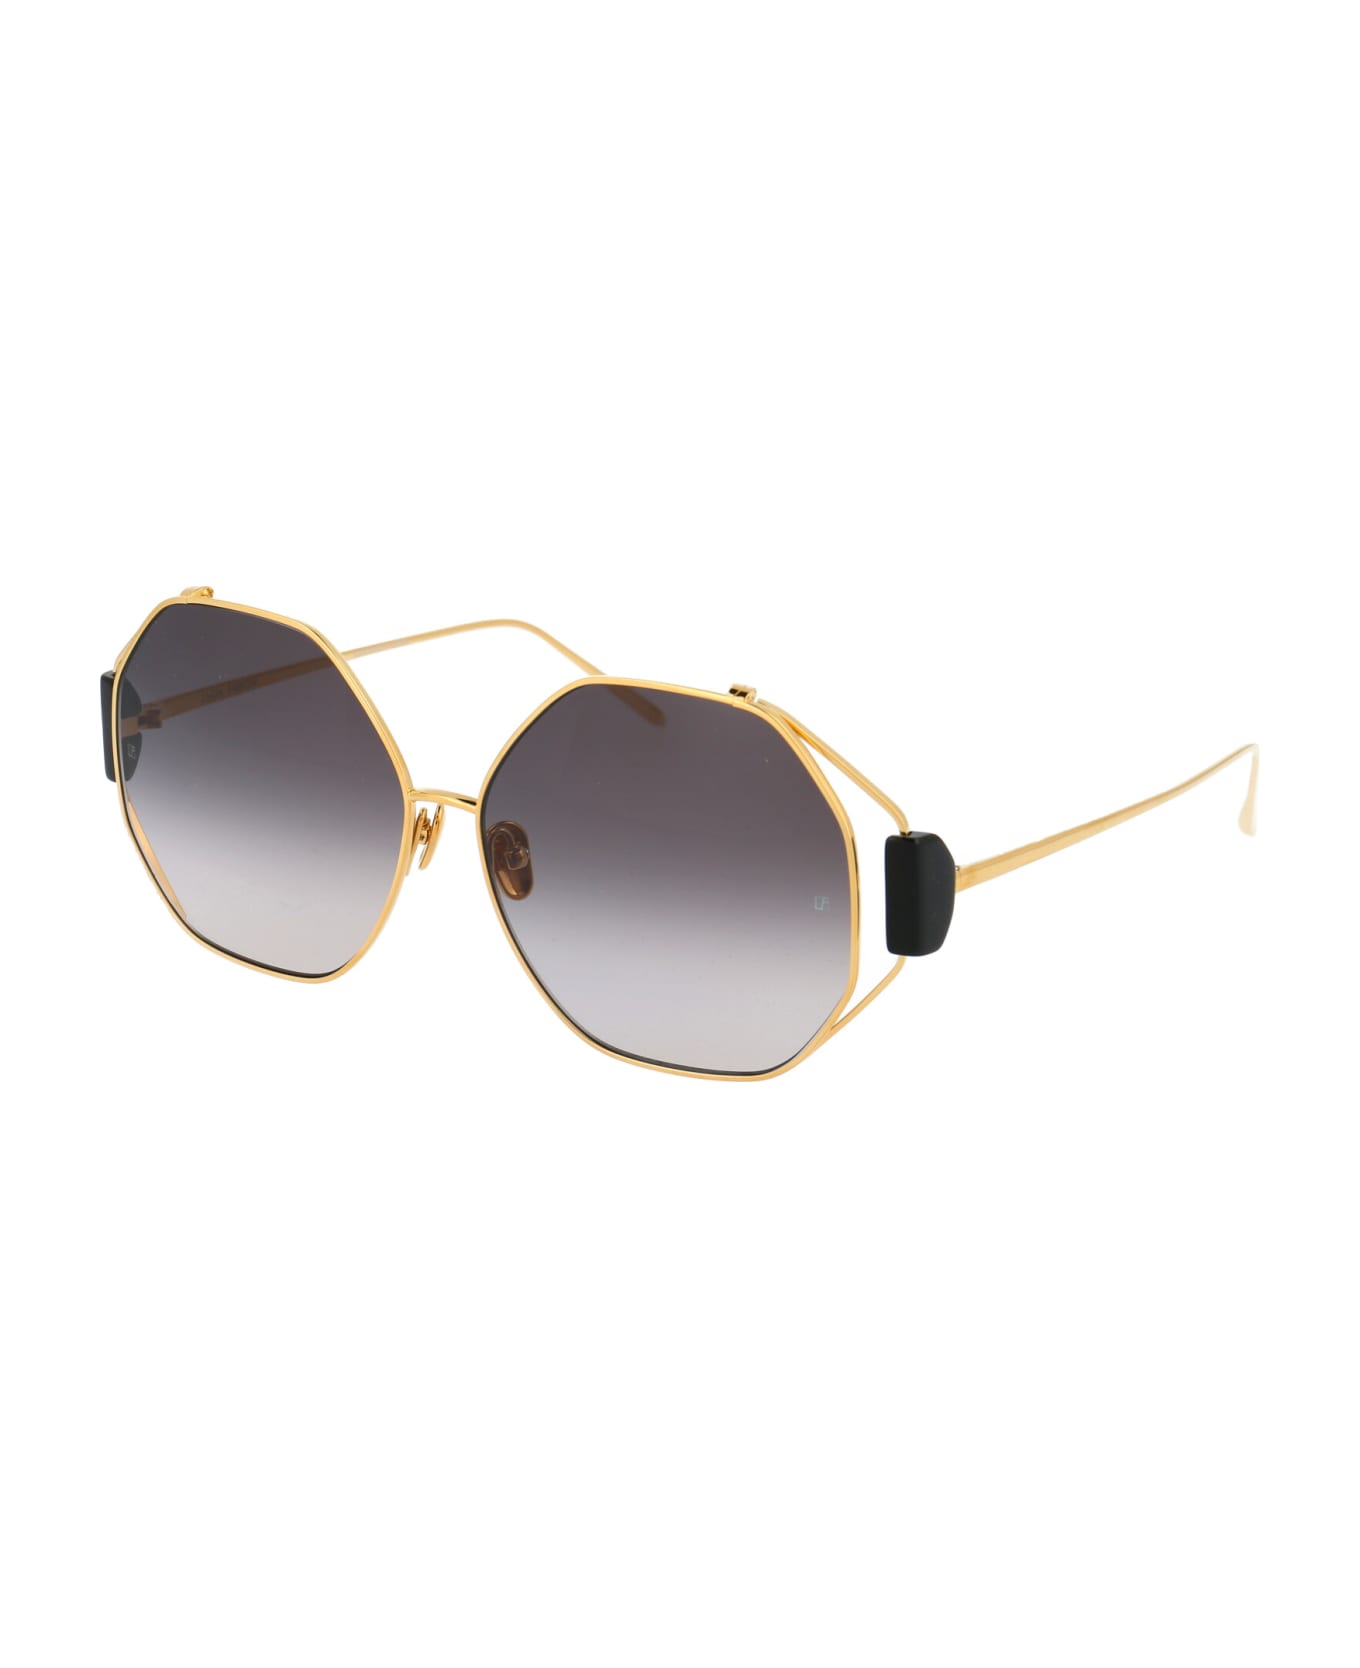 Linda Farrow Marie Sunglasses -  YELLOW GOLD/ BLACK/ GREY GRAD サングラス